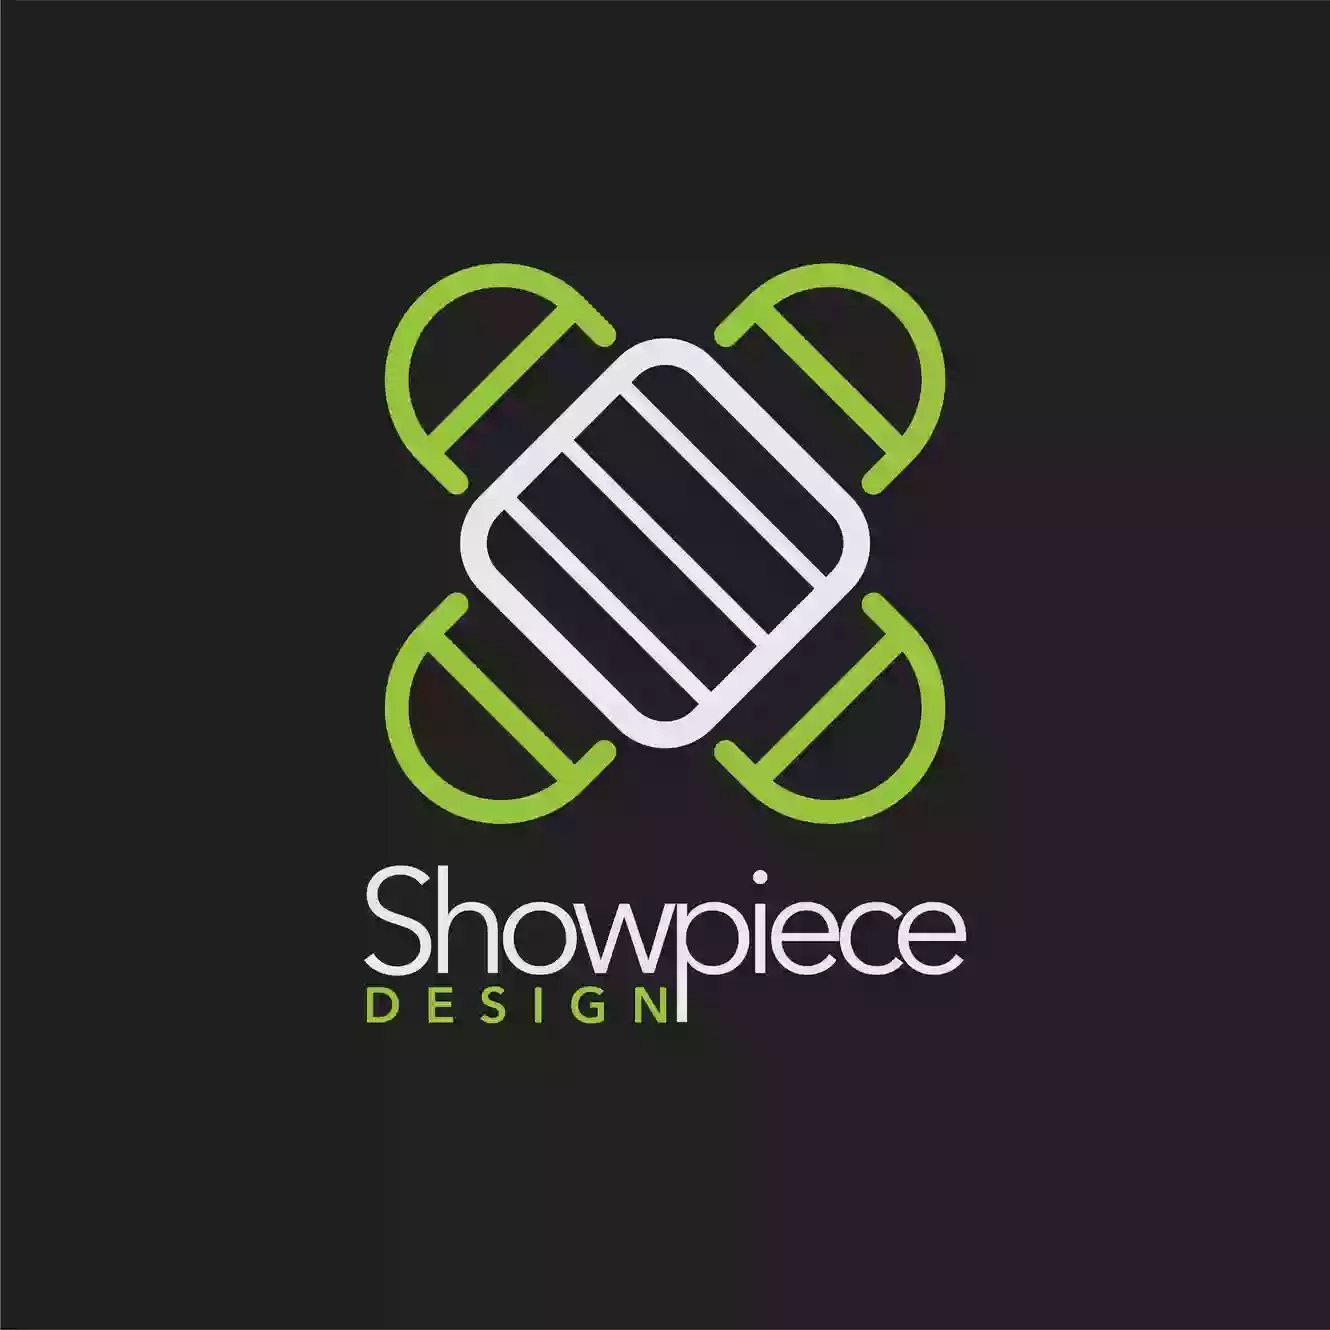 Showpiece Design Ltd